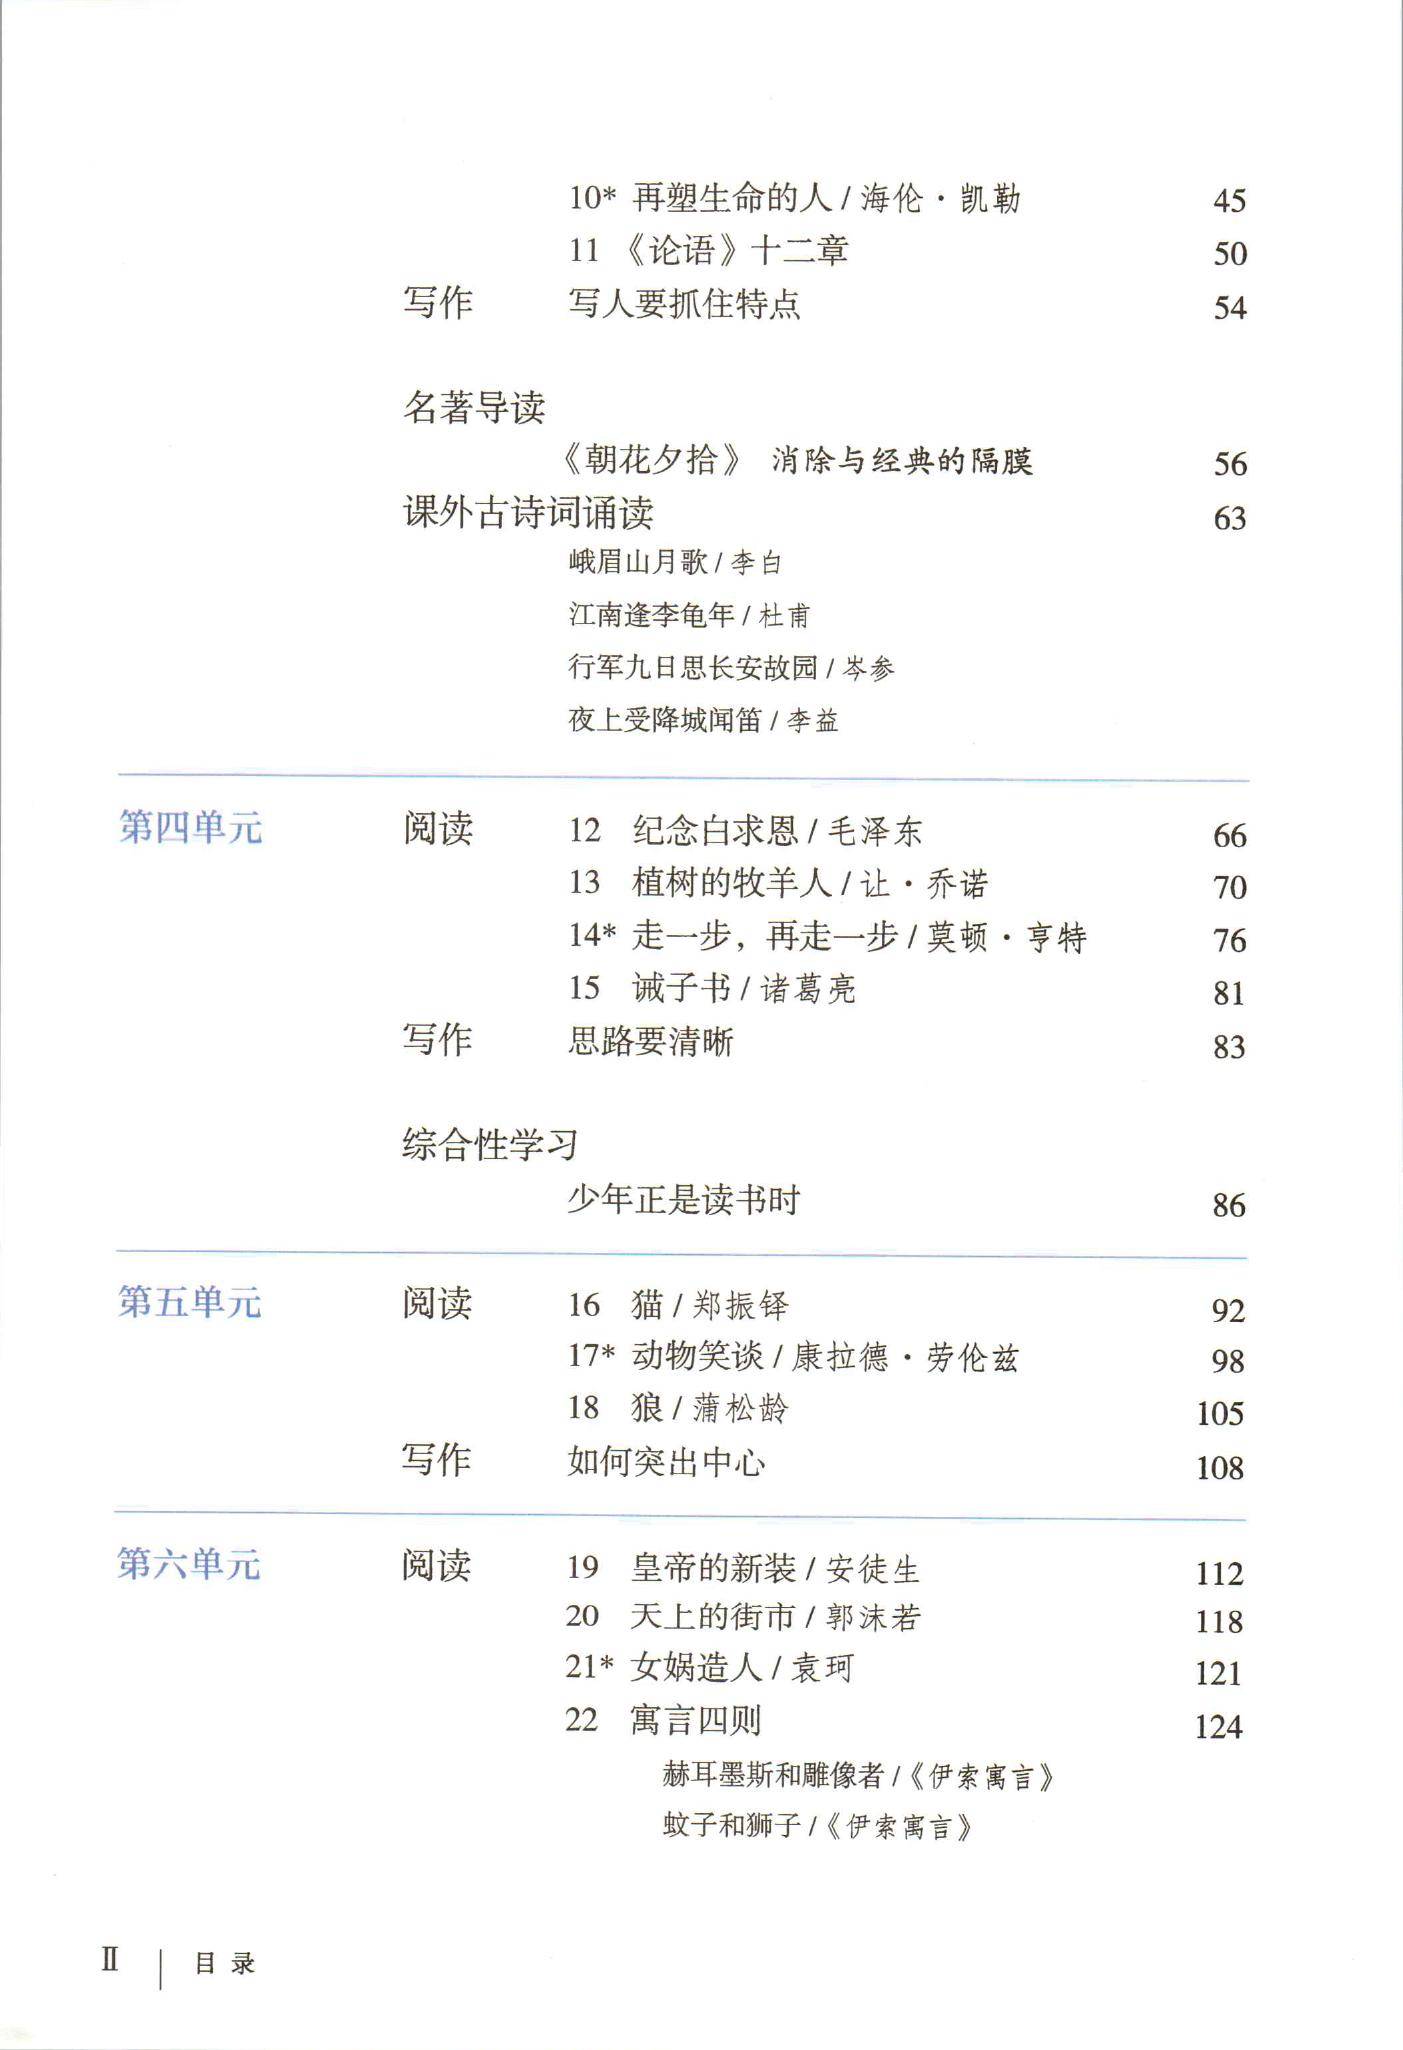 2021年初中语文七年级上册(六三学制)课本教材及相关资源介绍